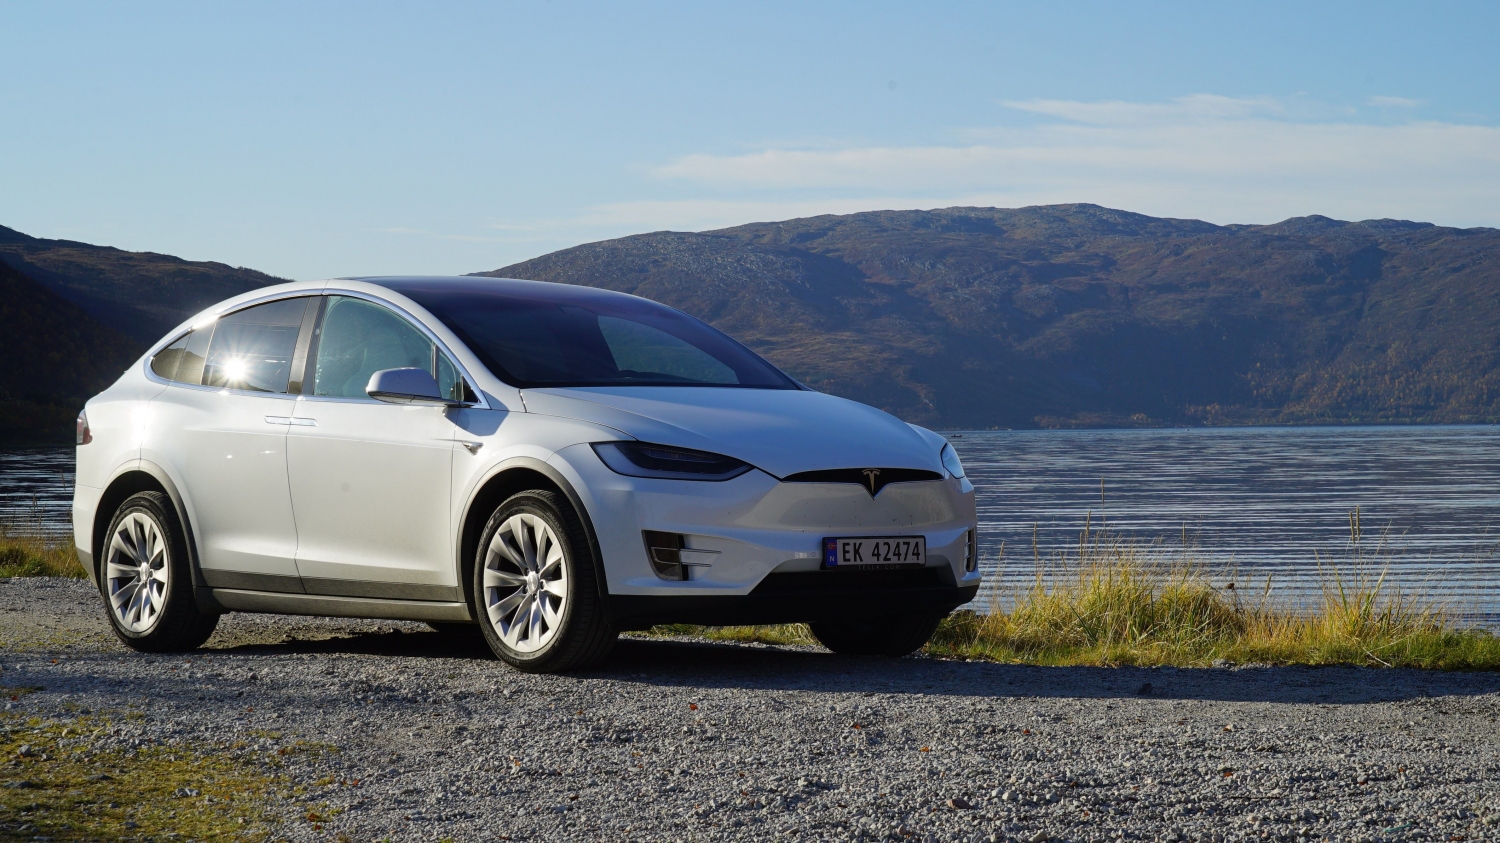 A Beautiful Midnightsun Tour from Tromsø with eco-friendly Tesla Model X